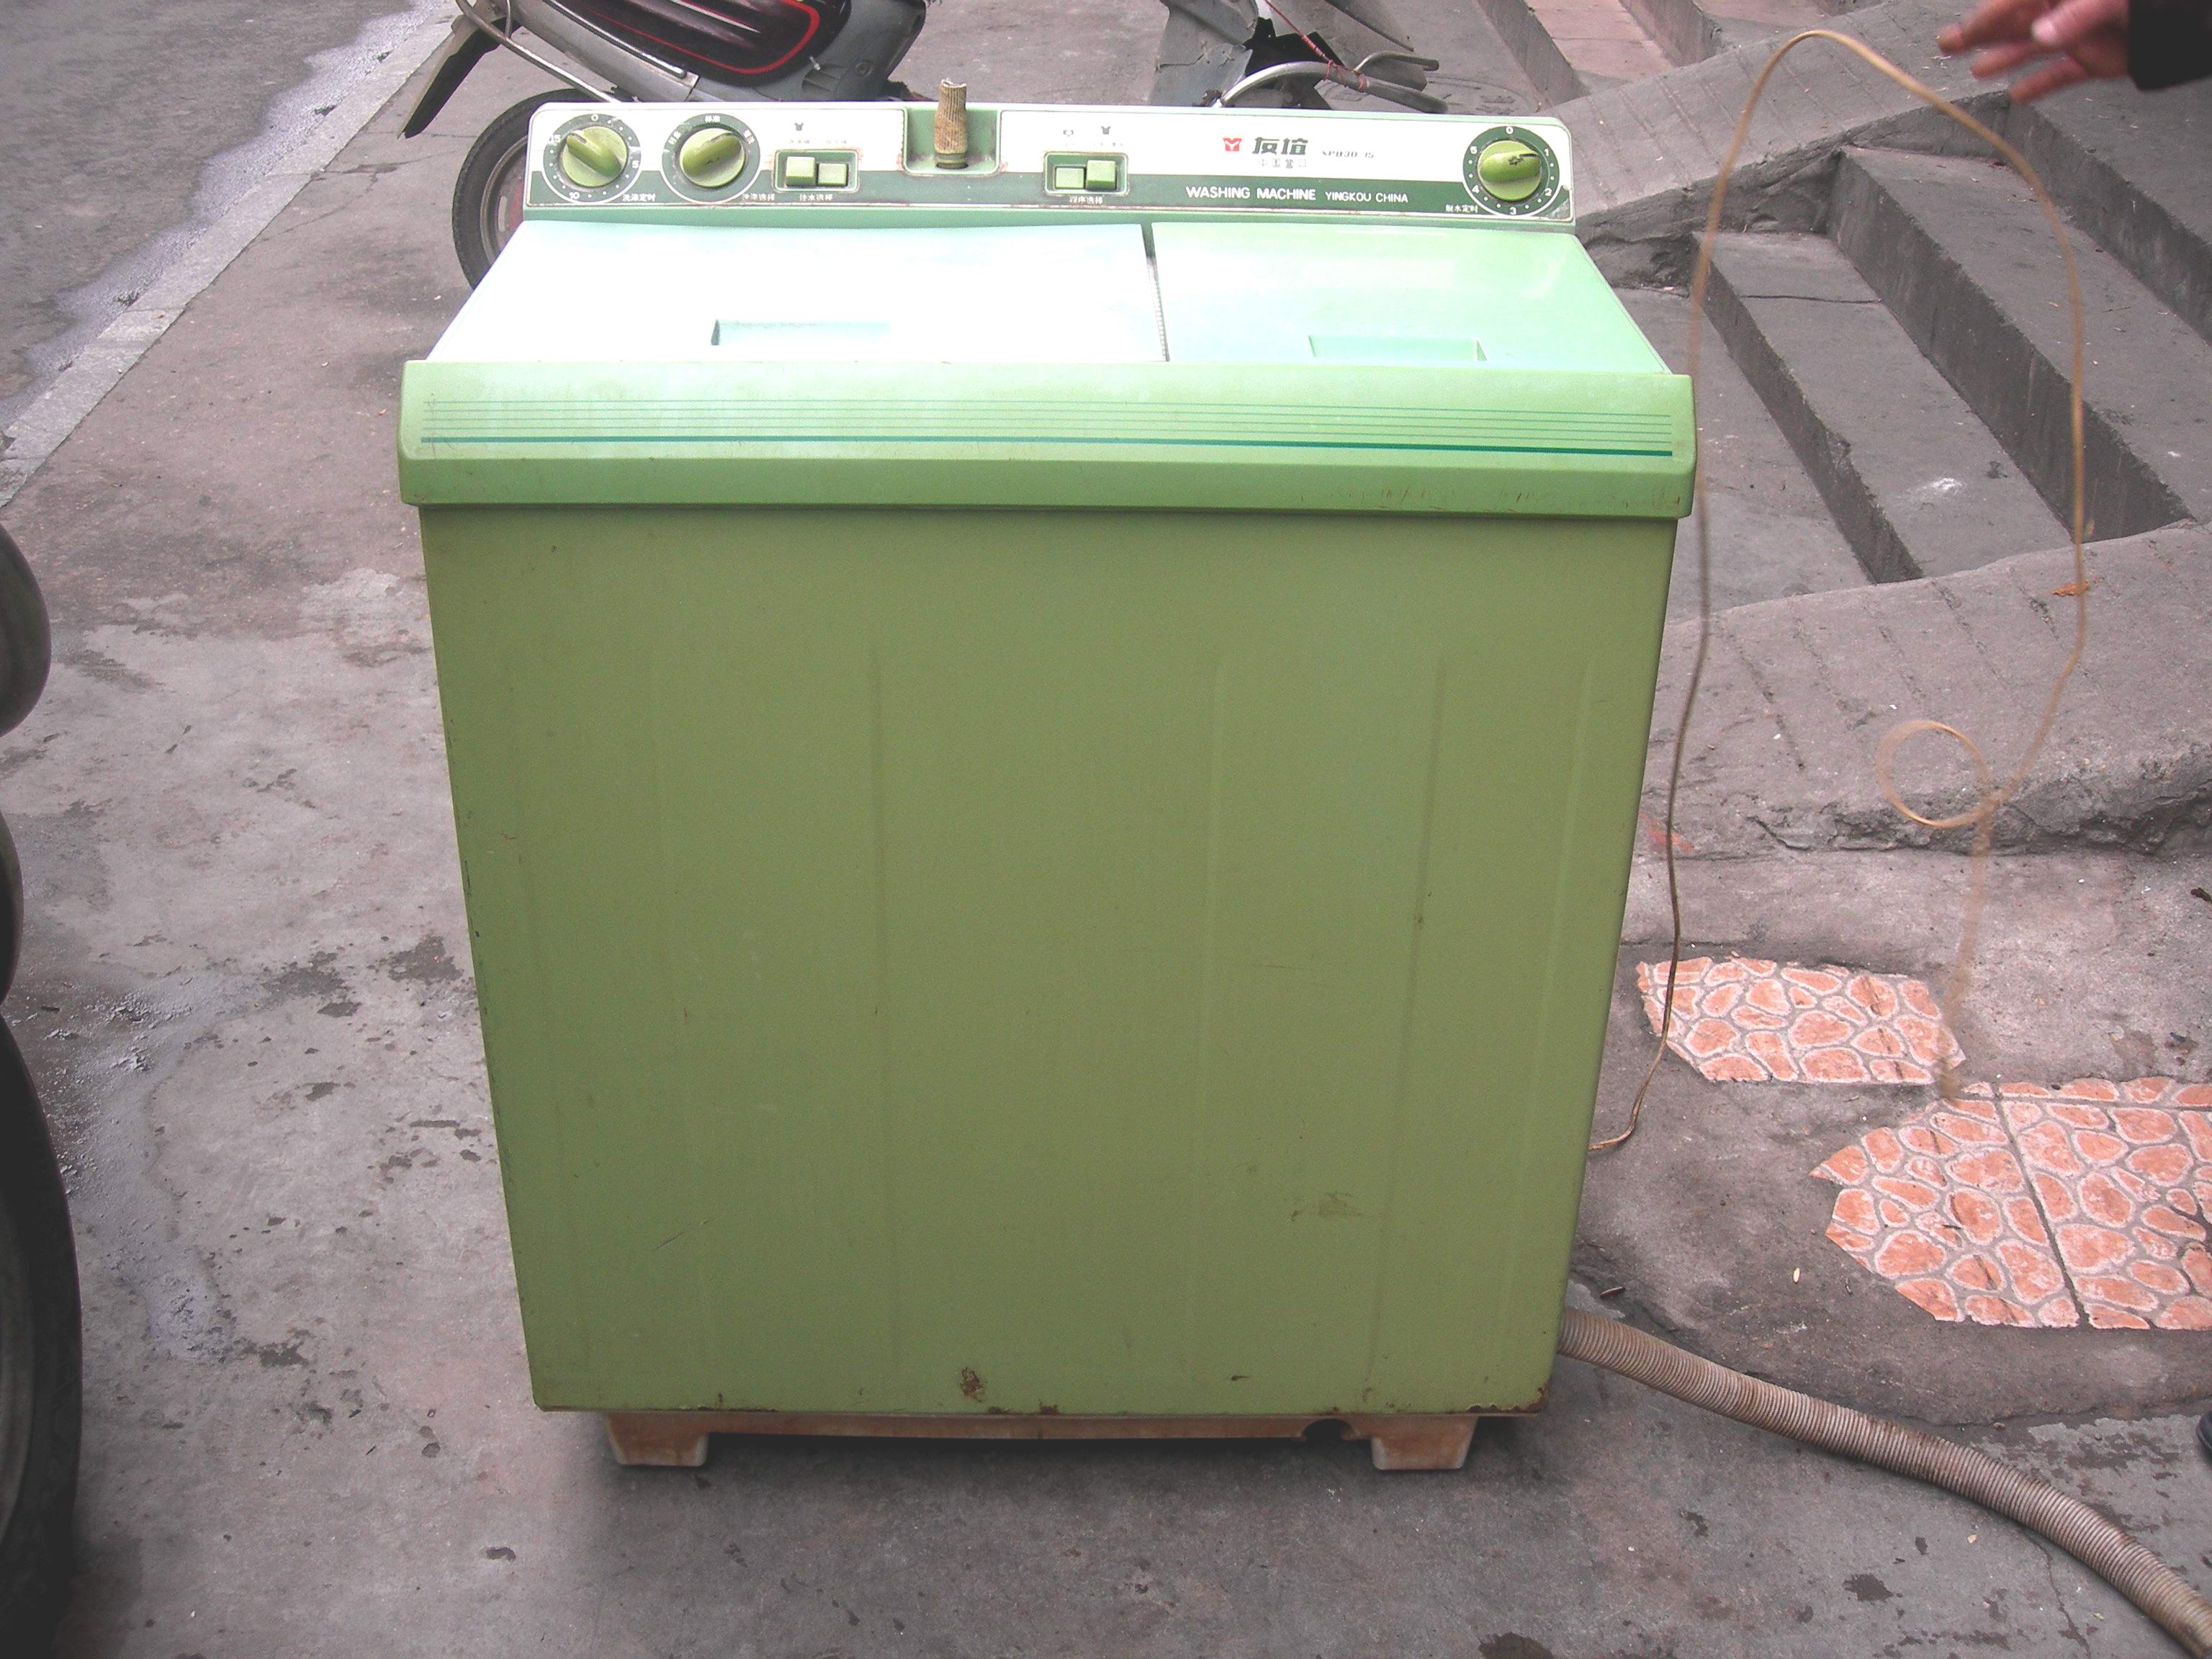 广州冰箱回收 广州冰箱回收公司 广州哪里有冰箱回收公司 广州高价回收冰箱